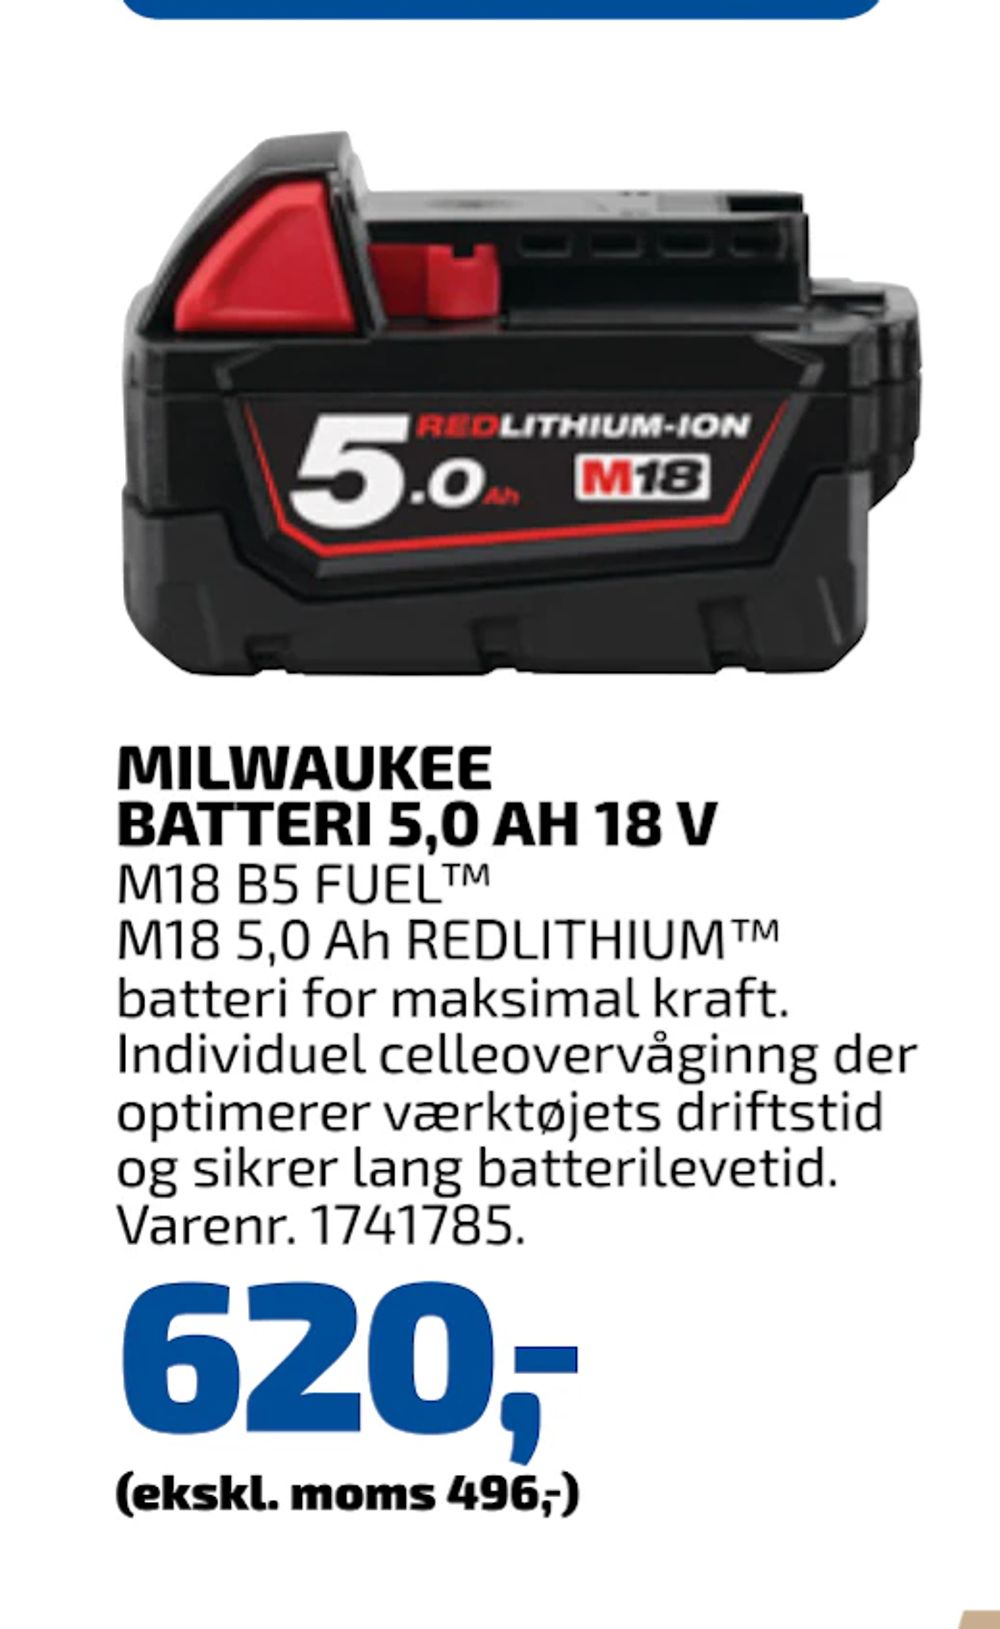 Tilbud på MILWAUKEE BATTERI 5,0 AH 18 V fra Davidsen til 620 kr.